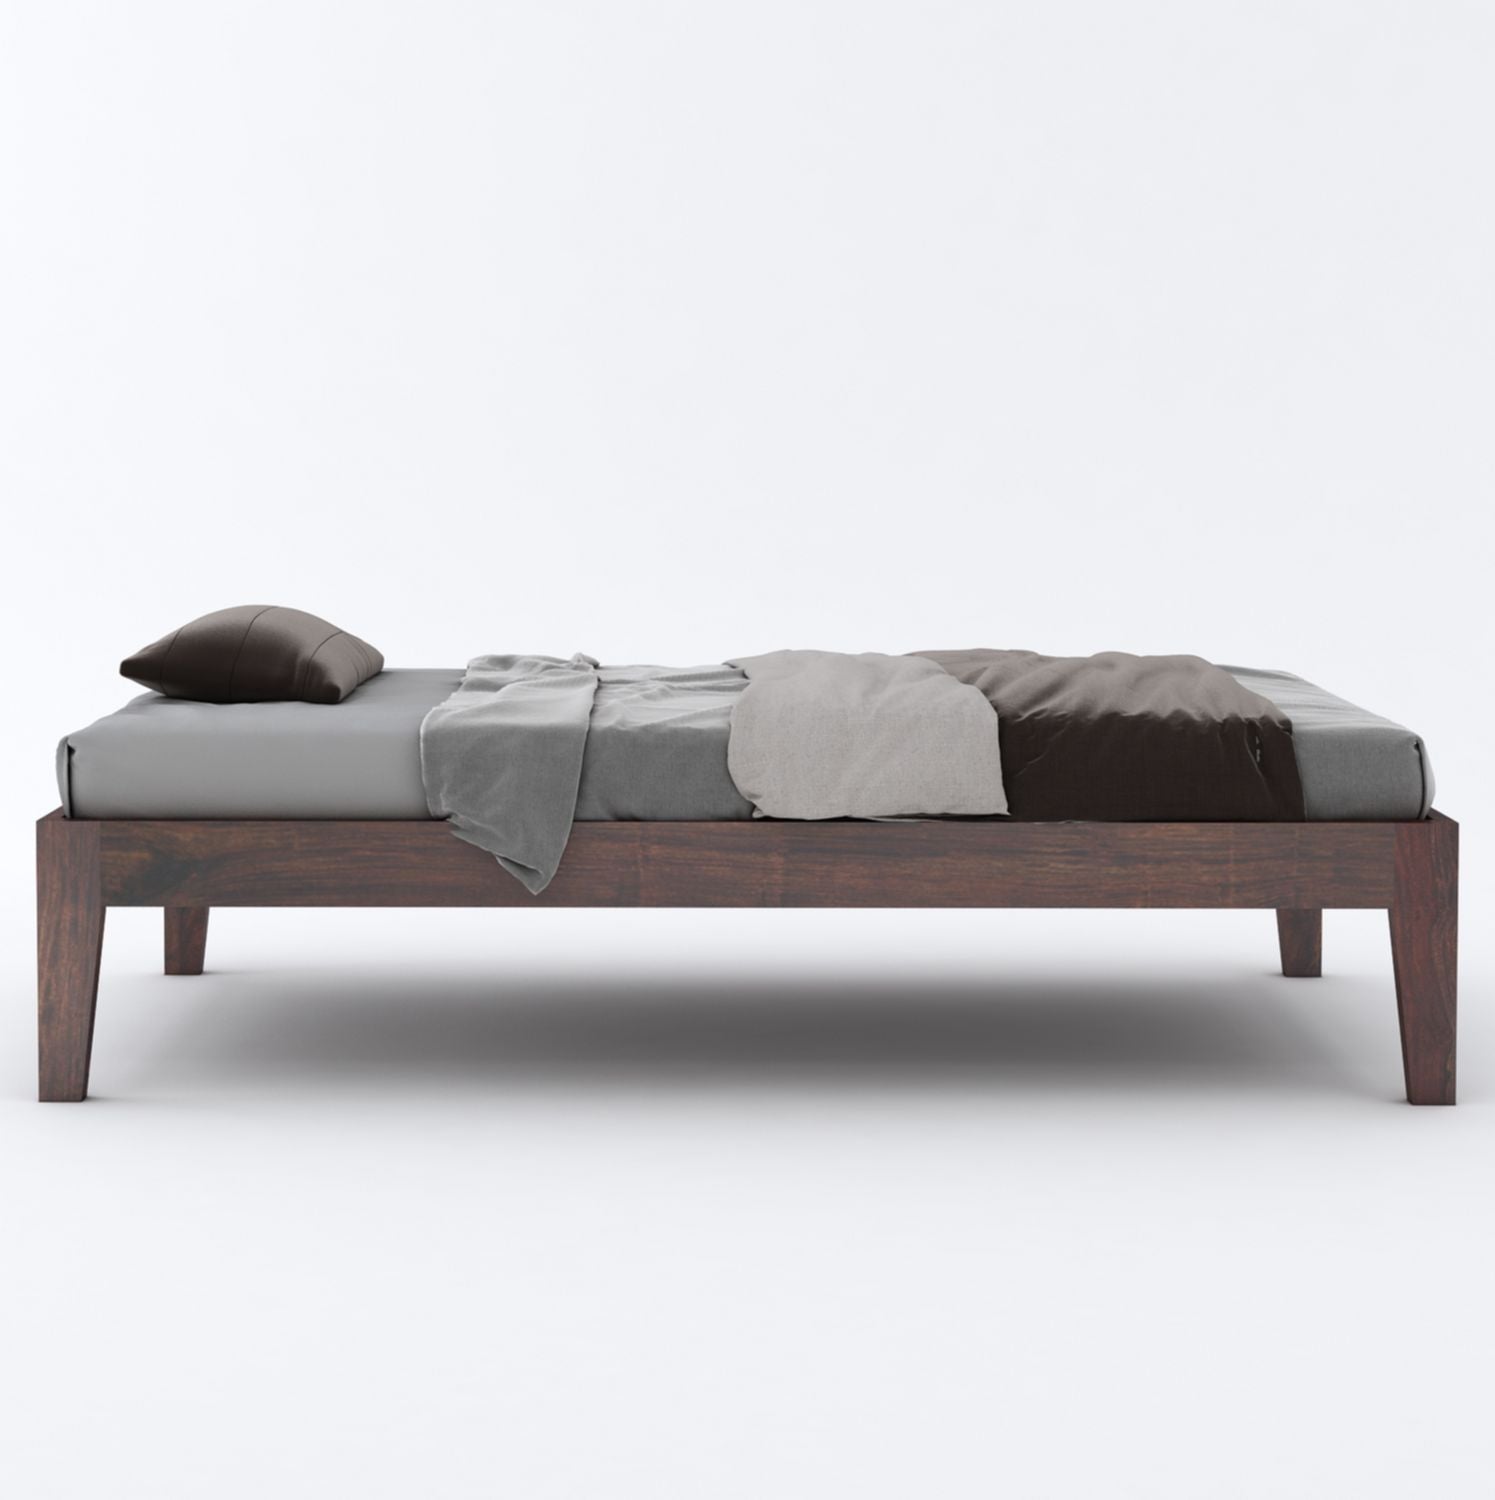 Minimal Solid Sheesham Wood Single Bed Without Storage (Walnut Finish)